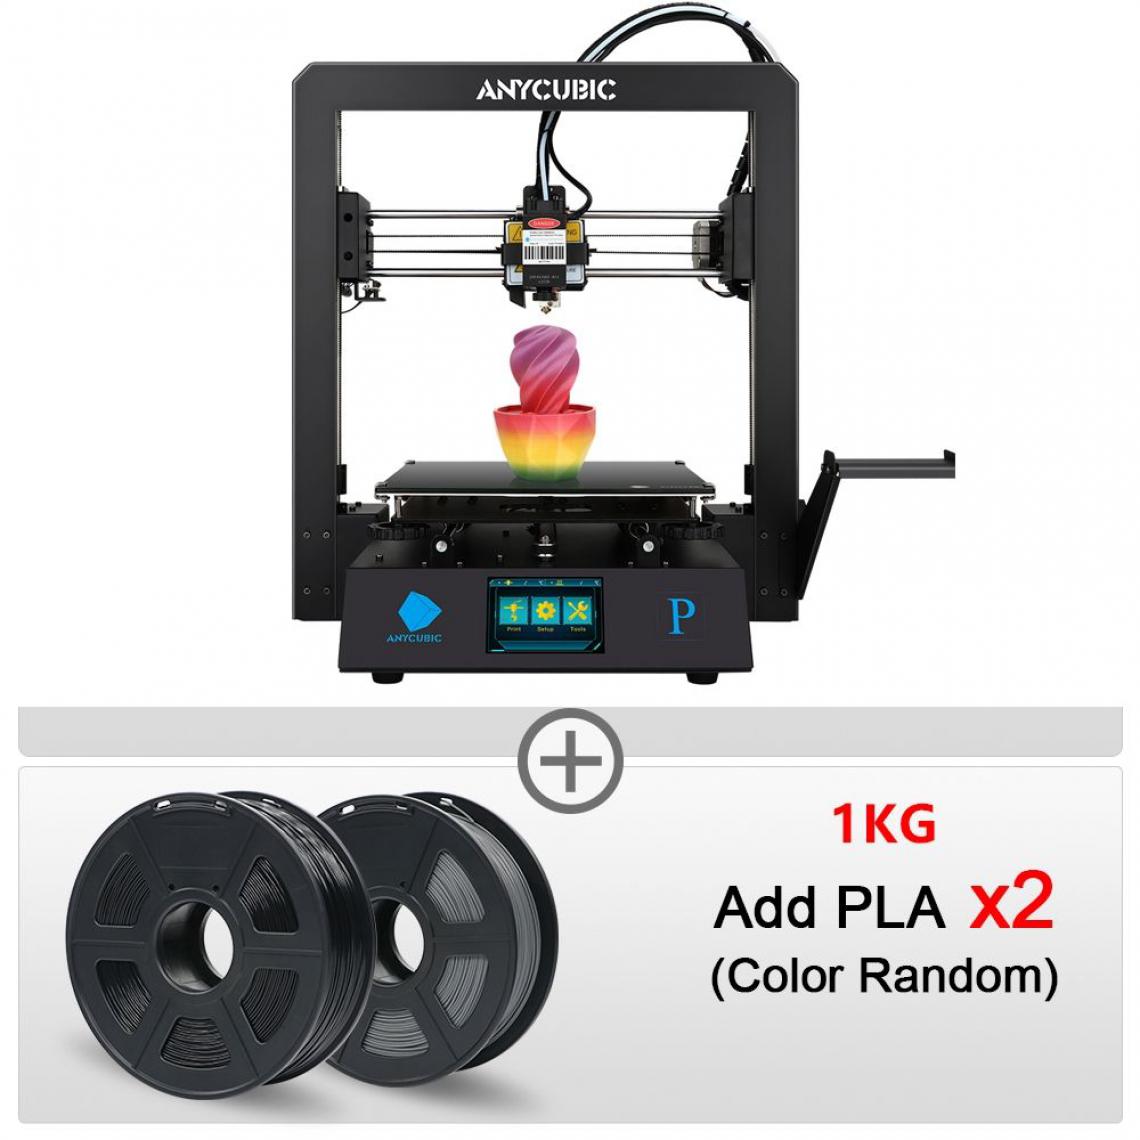 Generic - Imprimante 3D ANYCUBIC Mega Pro  avec à 1 tête d'impression  PLA, ABS, TPU, Gravure Laser, Écran Tactile 2 en 1 et 2 Filaments,  21* 21 * 20.5 cm - Noir  - Imprimante 3D